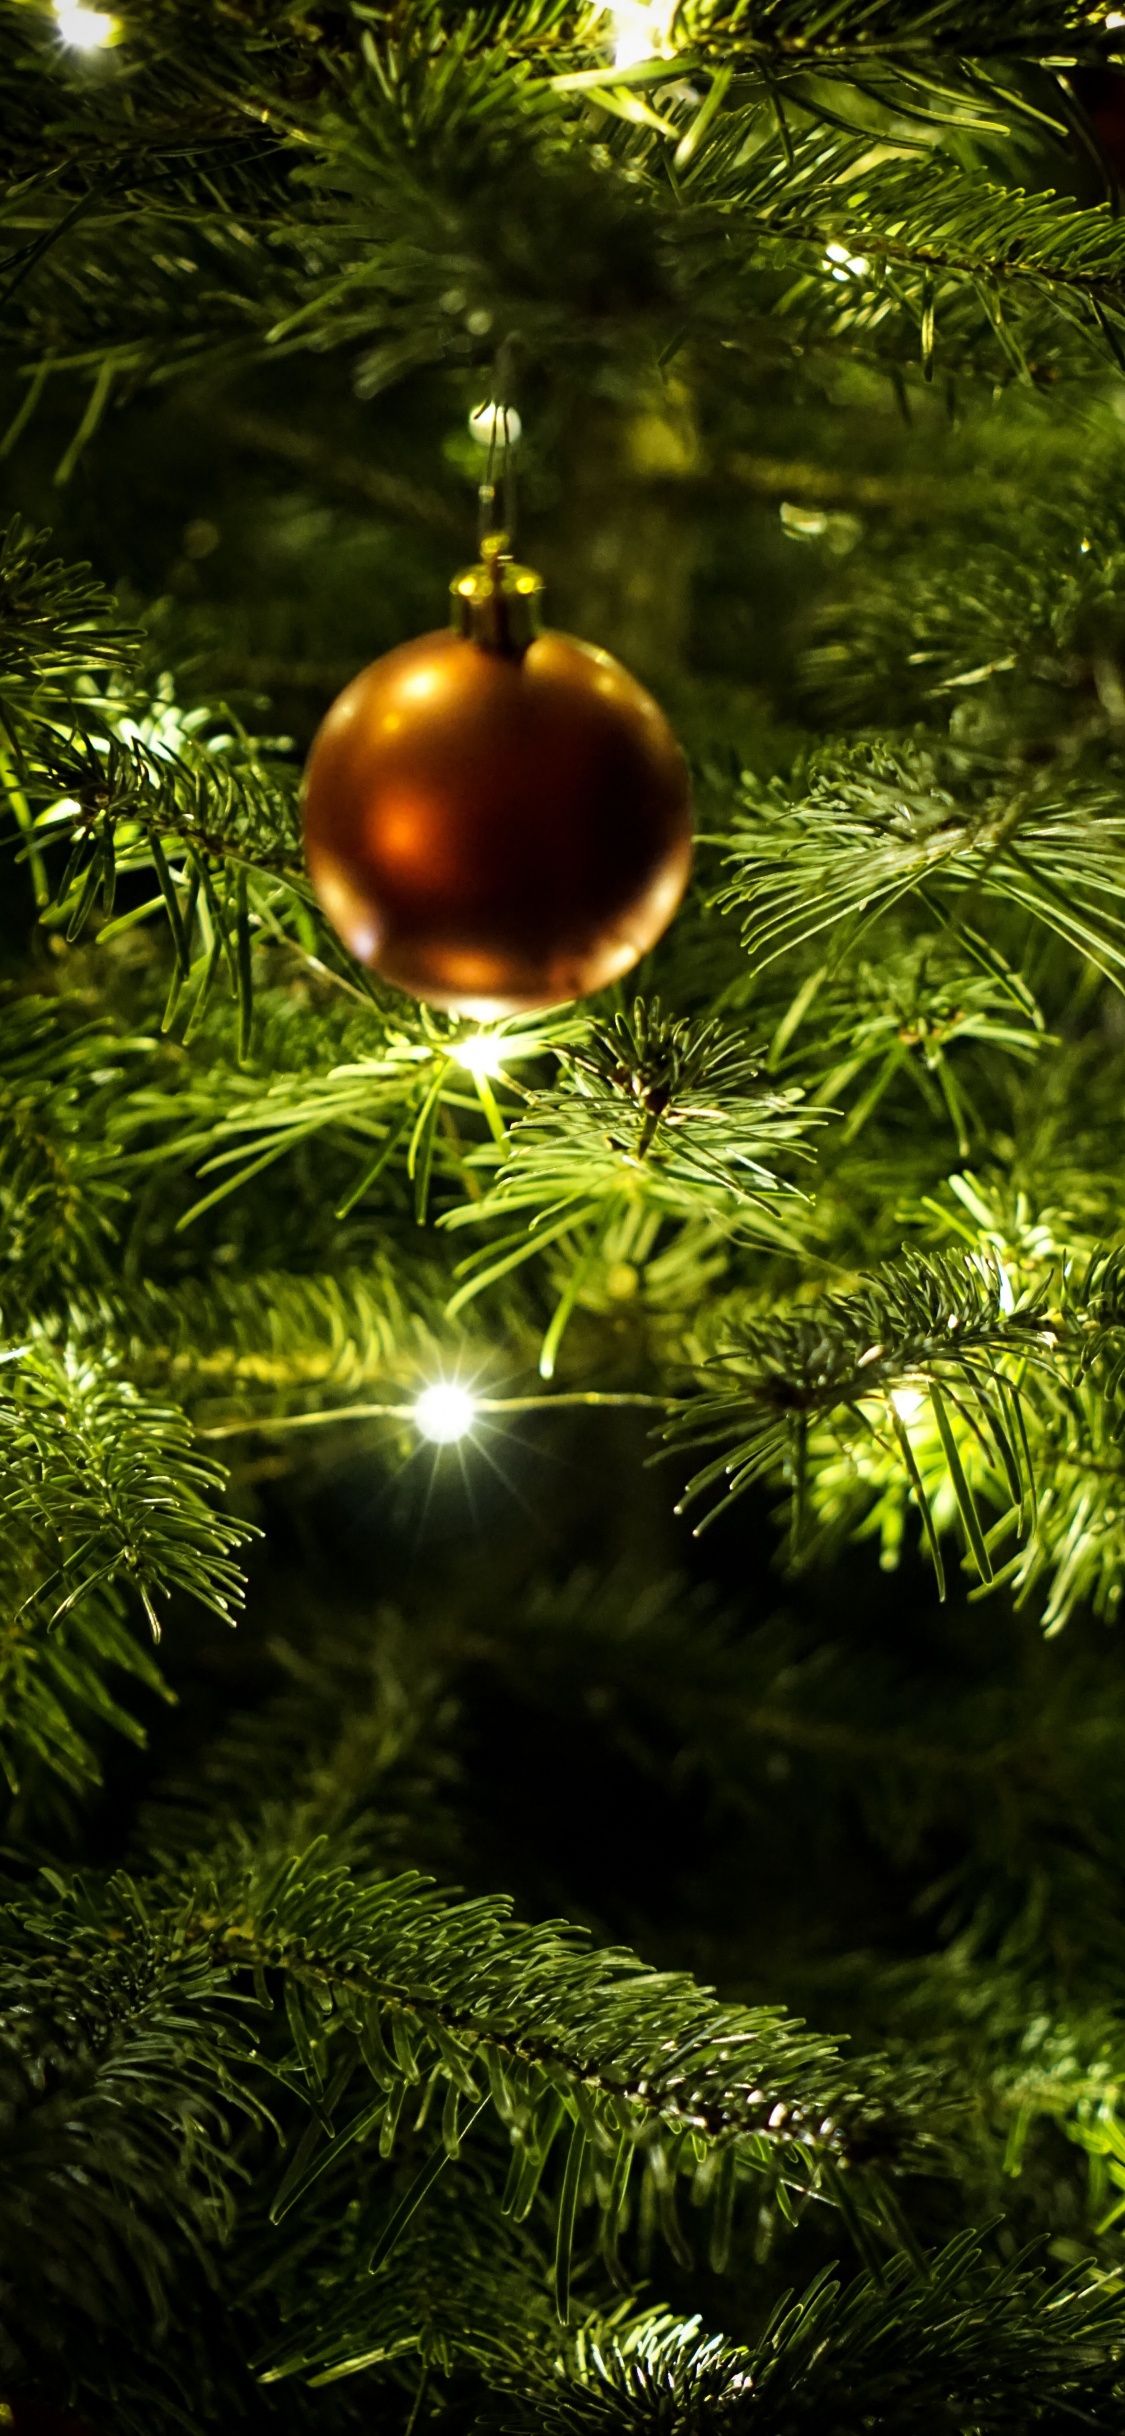 新的一年, 圣诞节那天, 圣诞节的装饰品, 圣诞装饰, 圣诞树 壁纸 1125x2436 允许